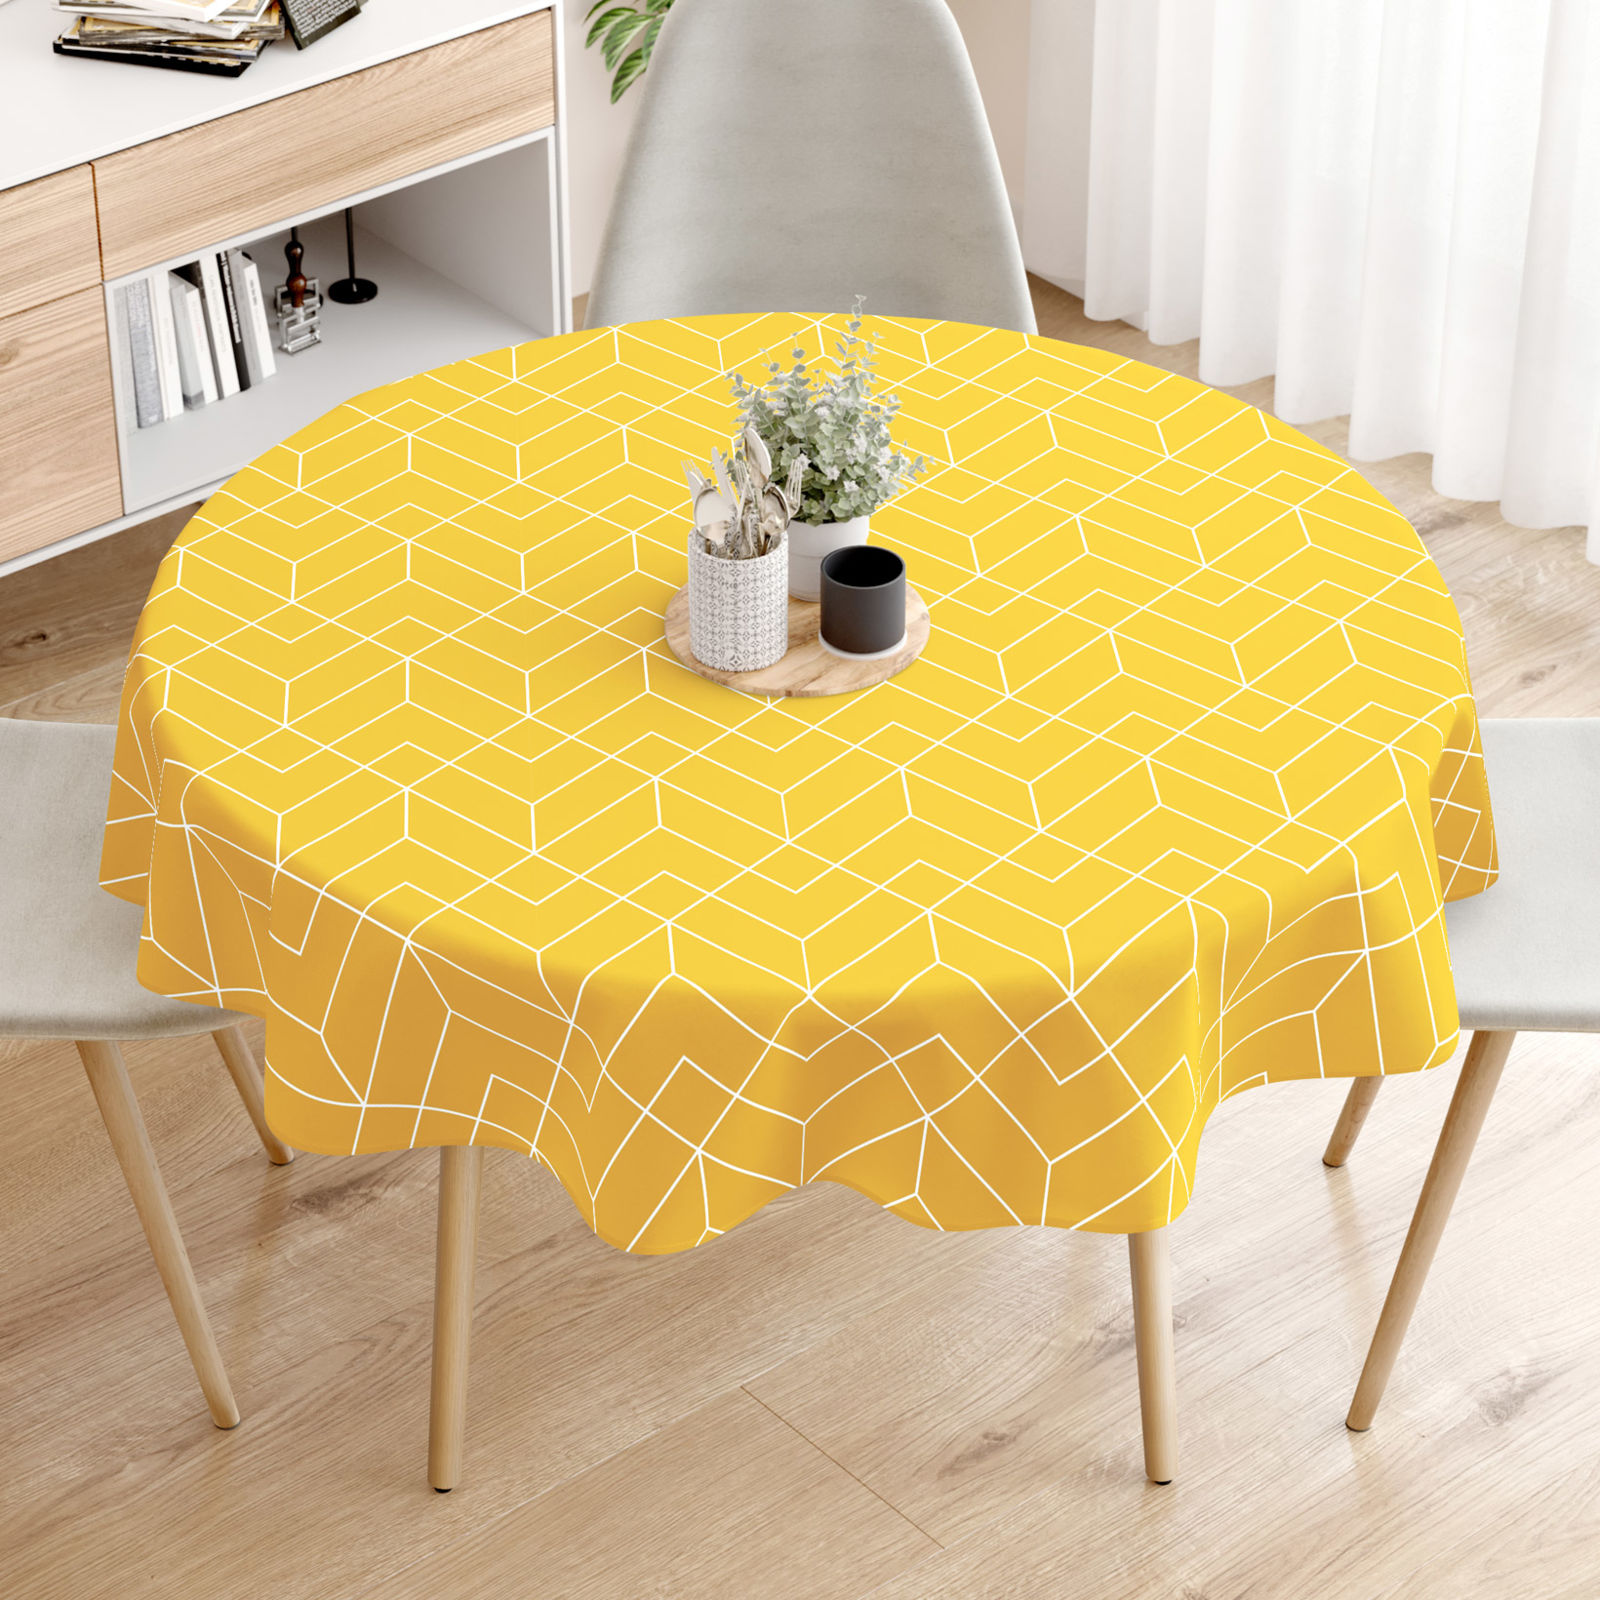 Pamut asztalterítő - Mozaik mintás, sárga alapon - kör alakú